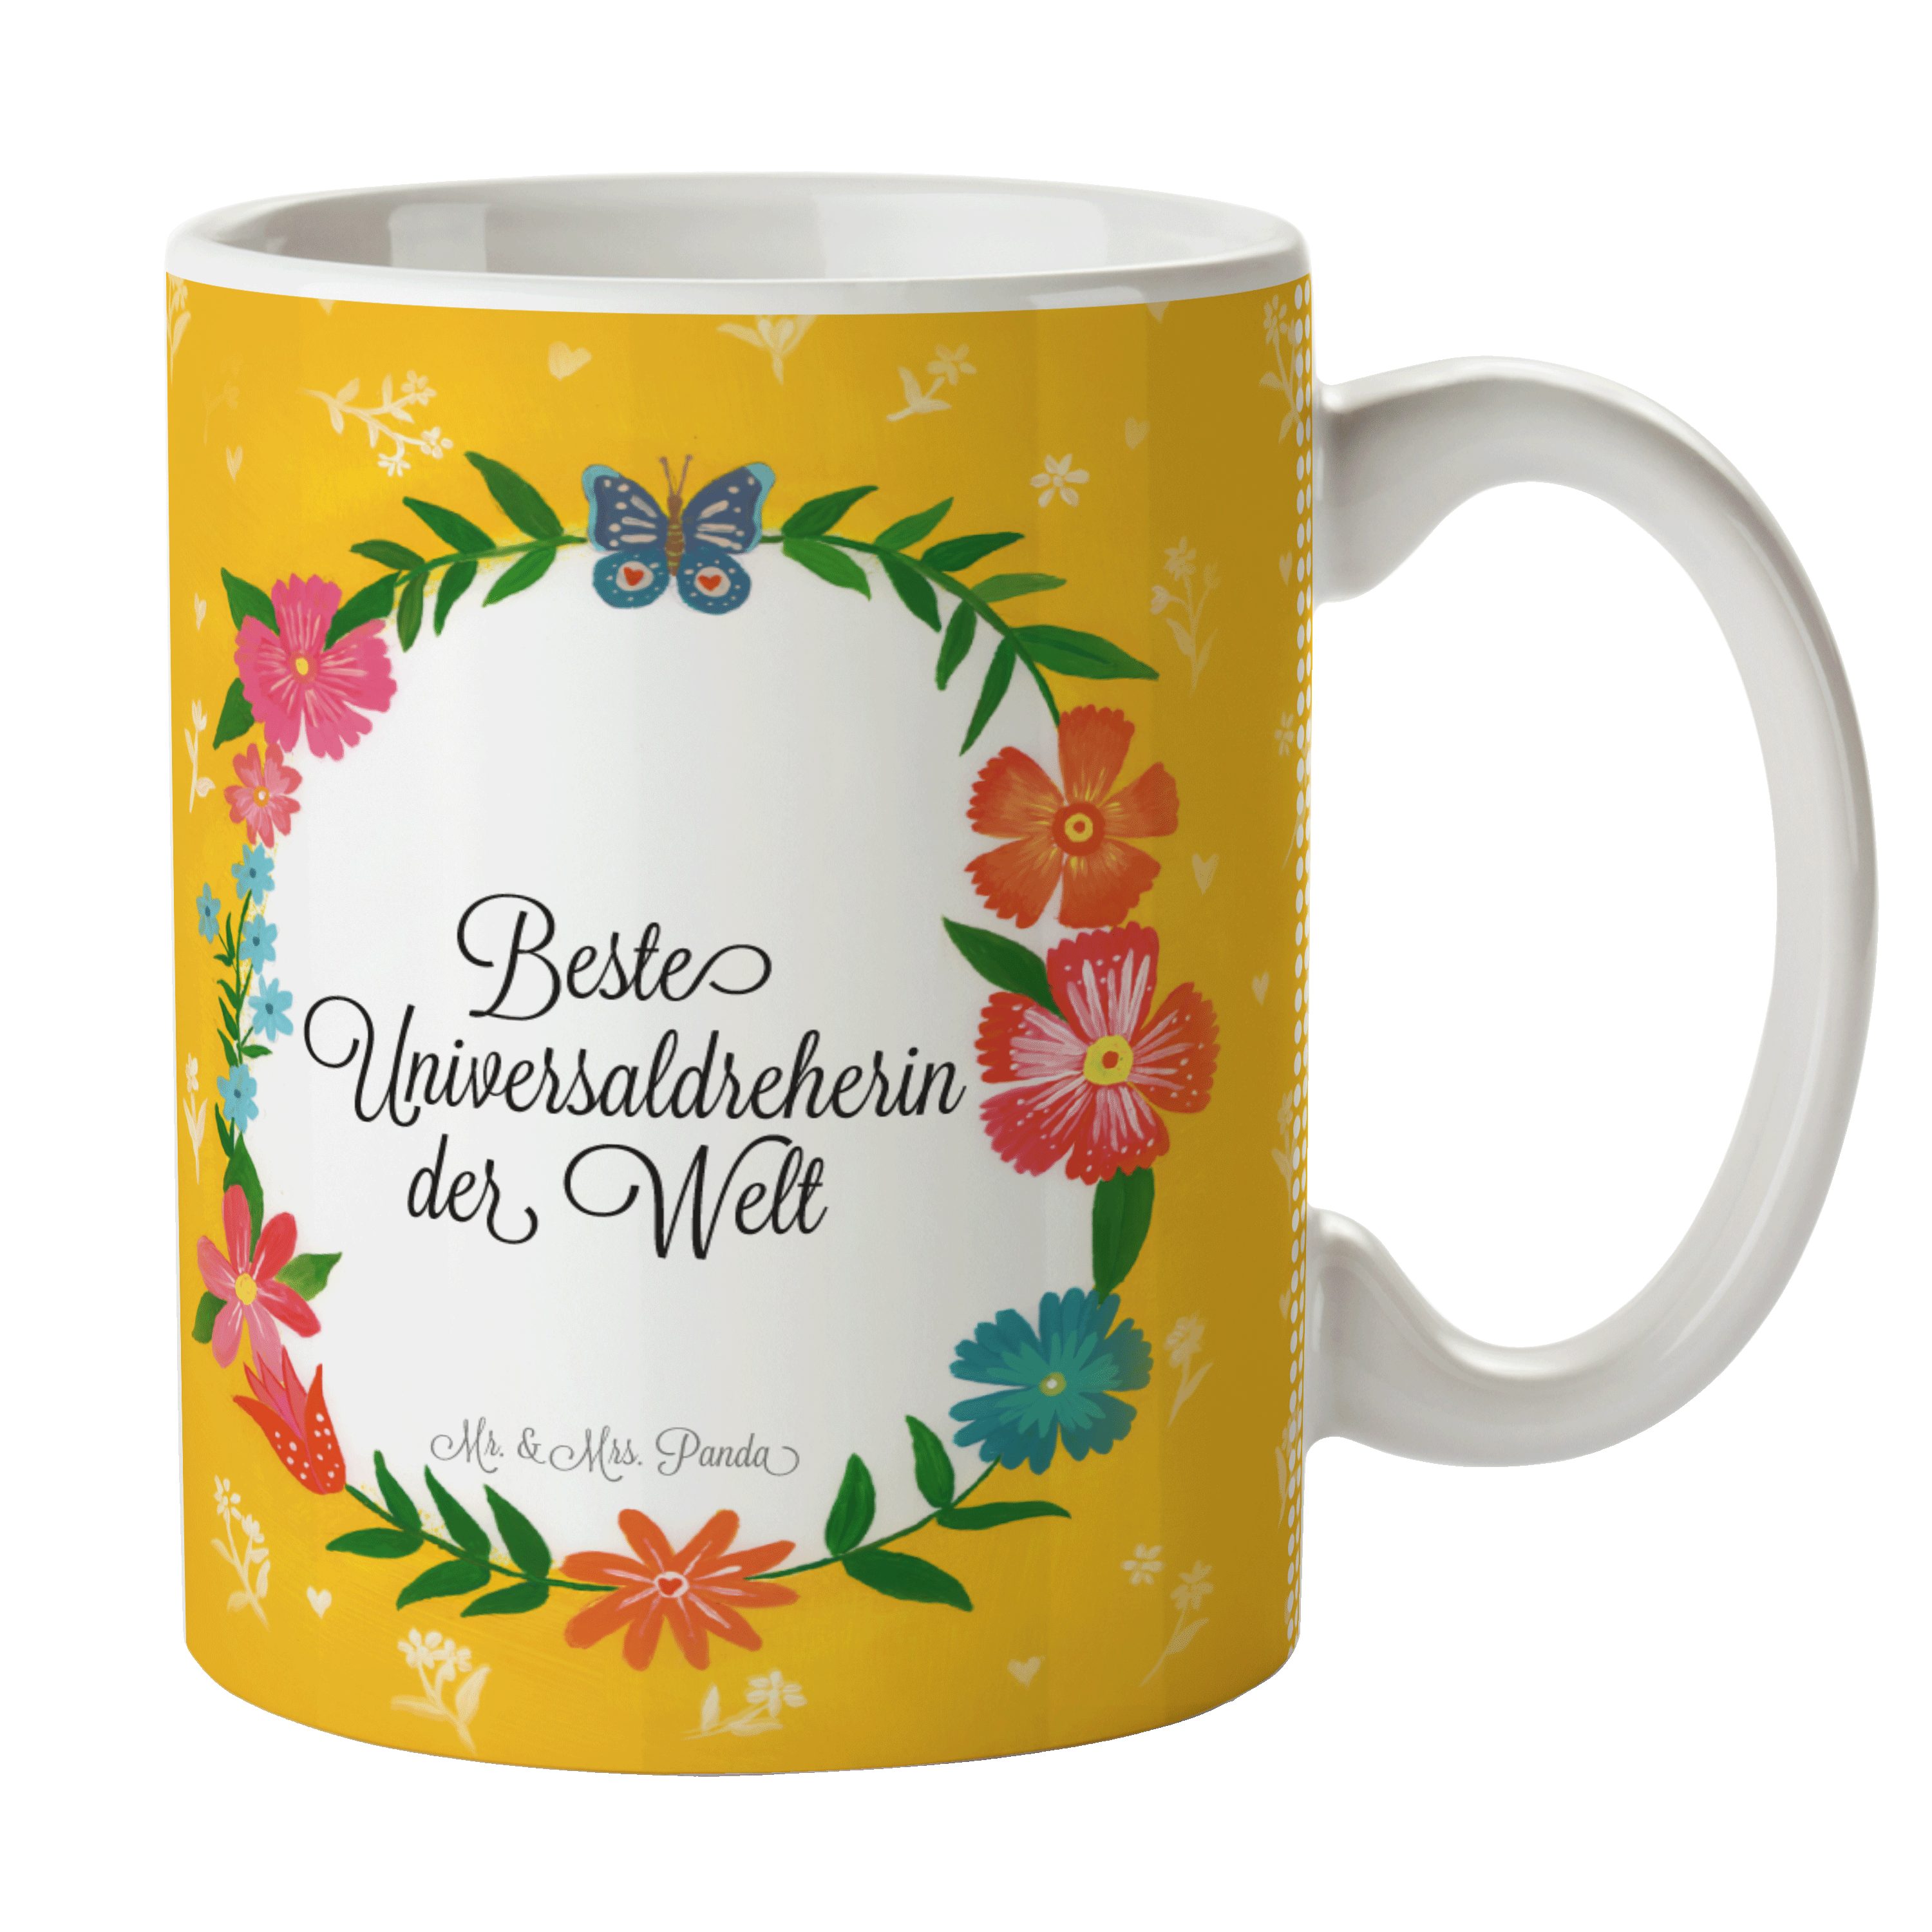 Tasse, Geschenk Keramik & - Motive, Tasse Tasse Mr. Geschenk, Mrs. Panda Schenken, Universaldreherin